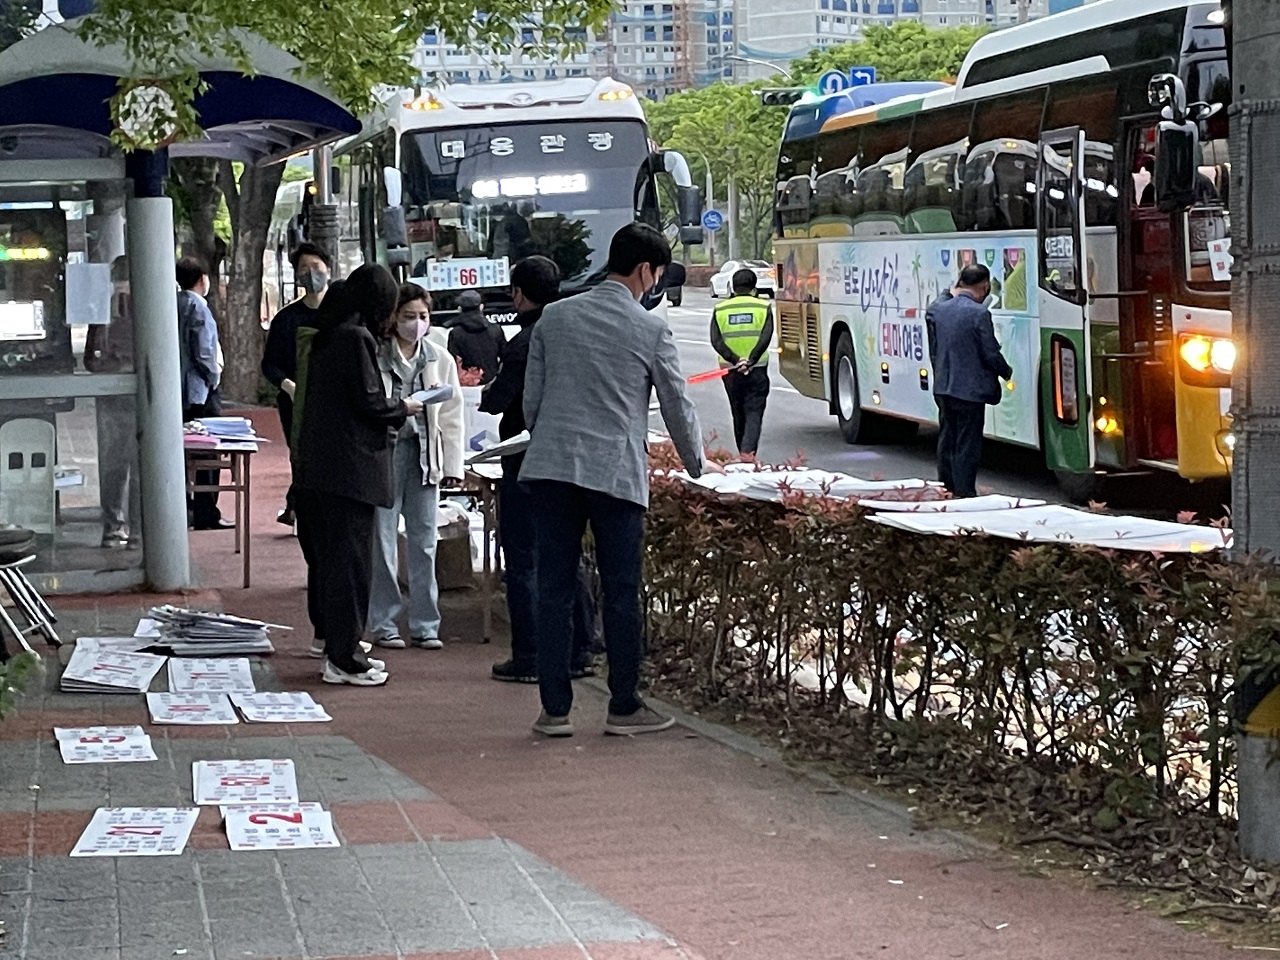 순천 시내버스 노조가 지난 20일부로 전면 파업에 돌입한 가운데 순천시가 비상수송대책으로 대체 버스 45대와 전세버스 등을  임시 운영하고 있다.